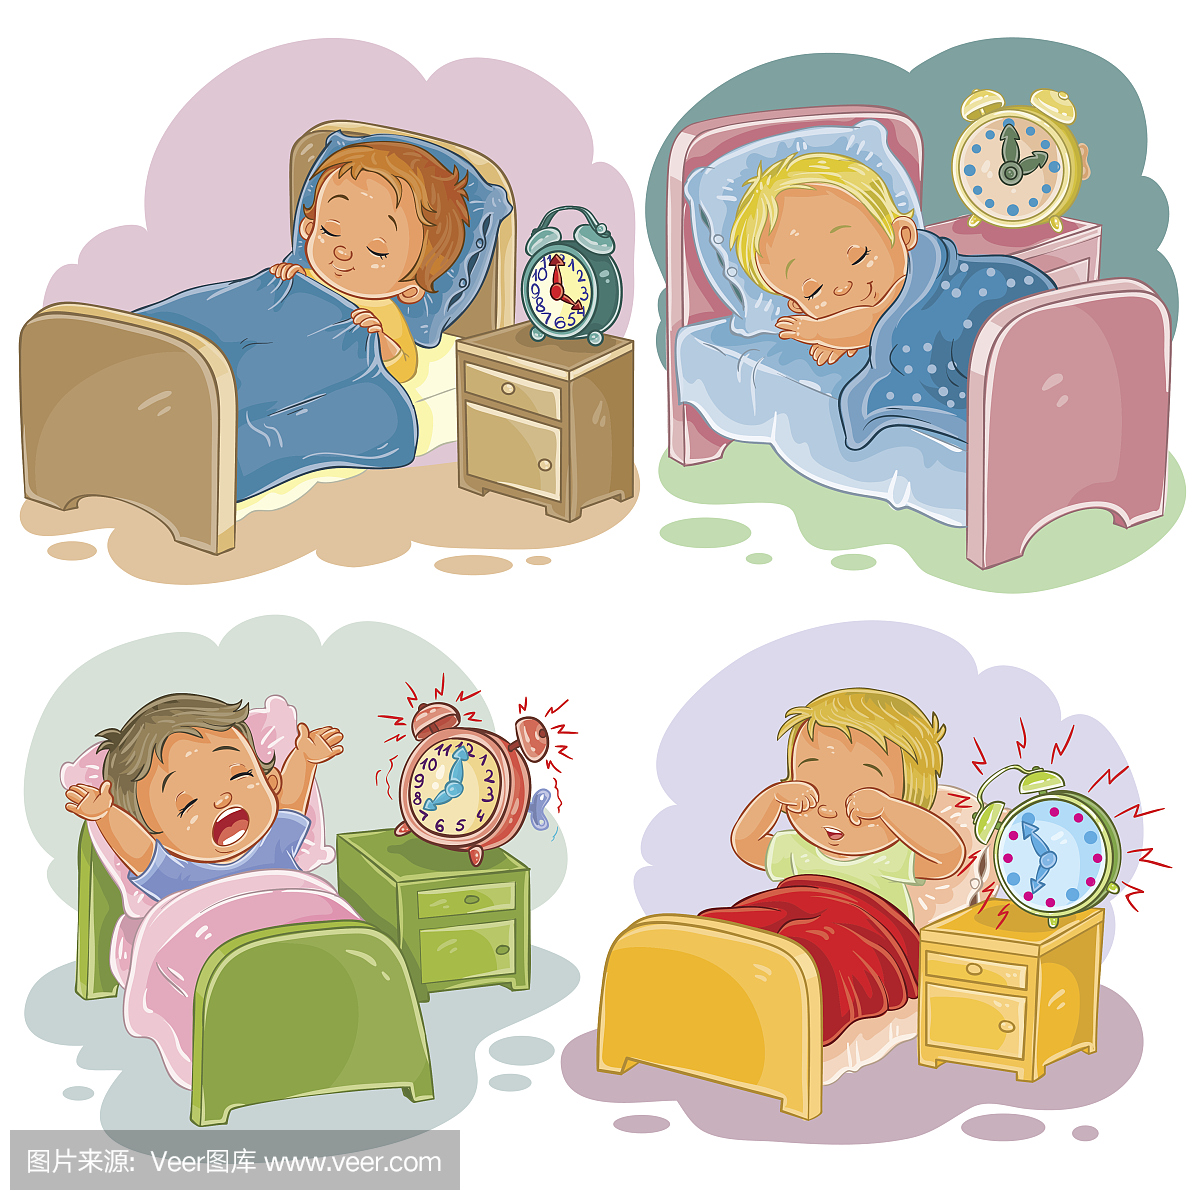 幼儿睡觉图片卡通 幼儿睡觉图片 - 电影天堂